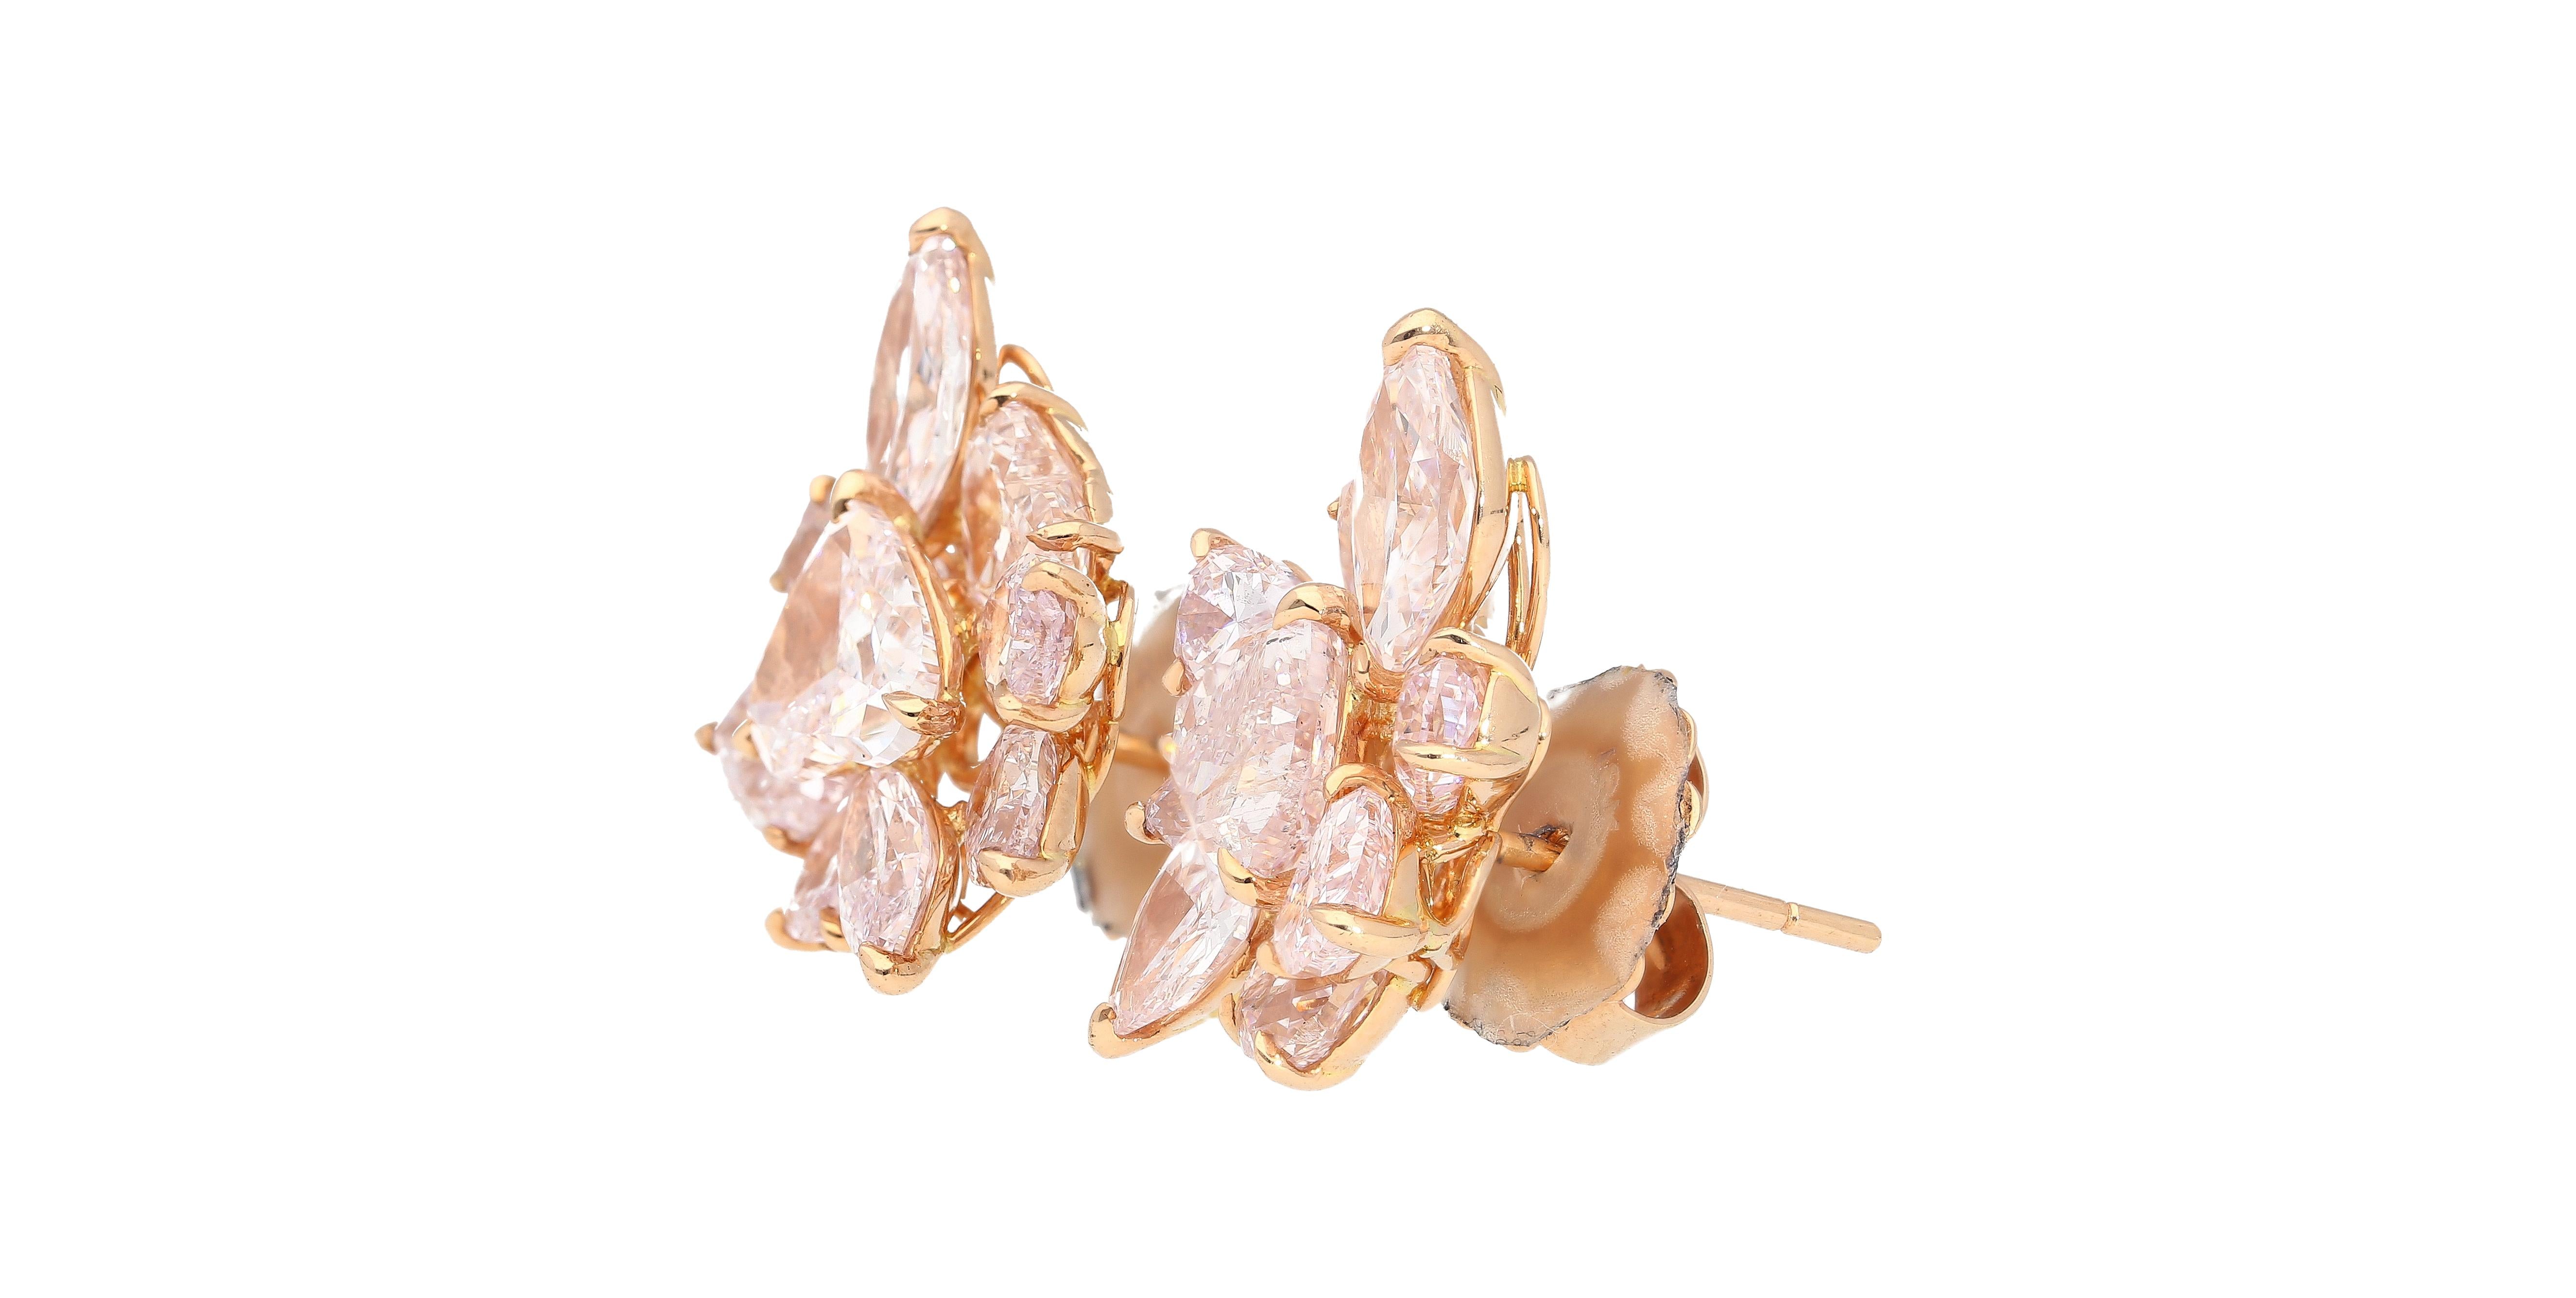 GIA Certified 10.78 Carat Heart Cut Pink Diamond Cluster Stud Earrings in 18k